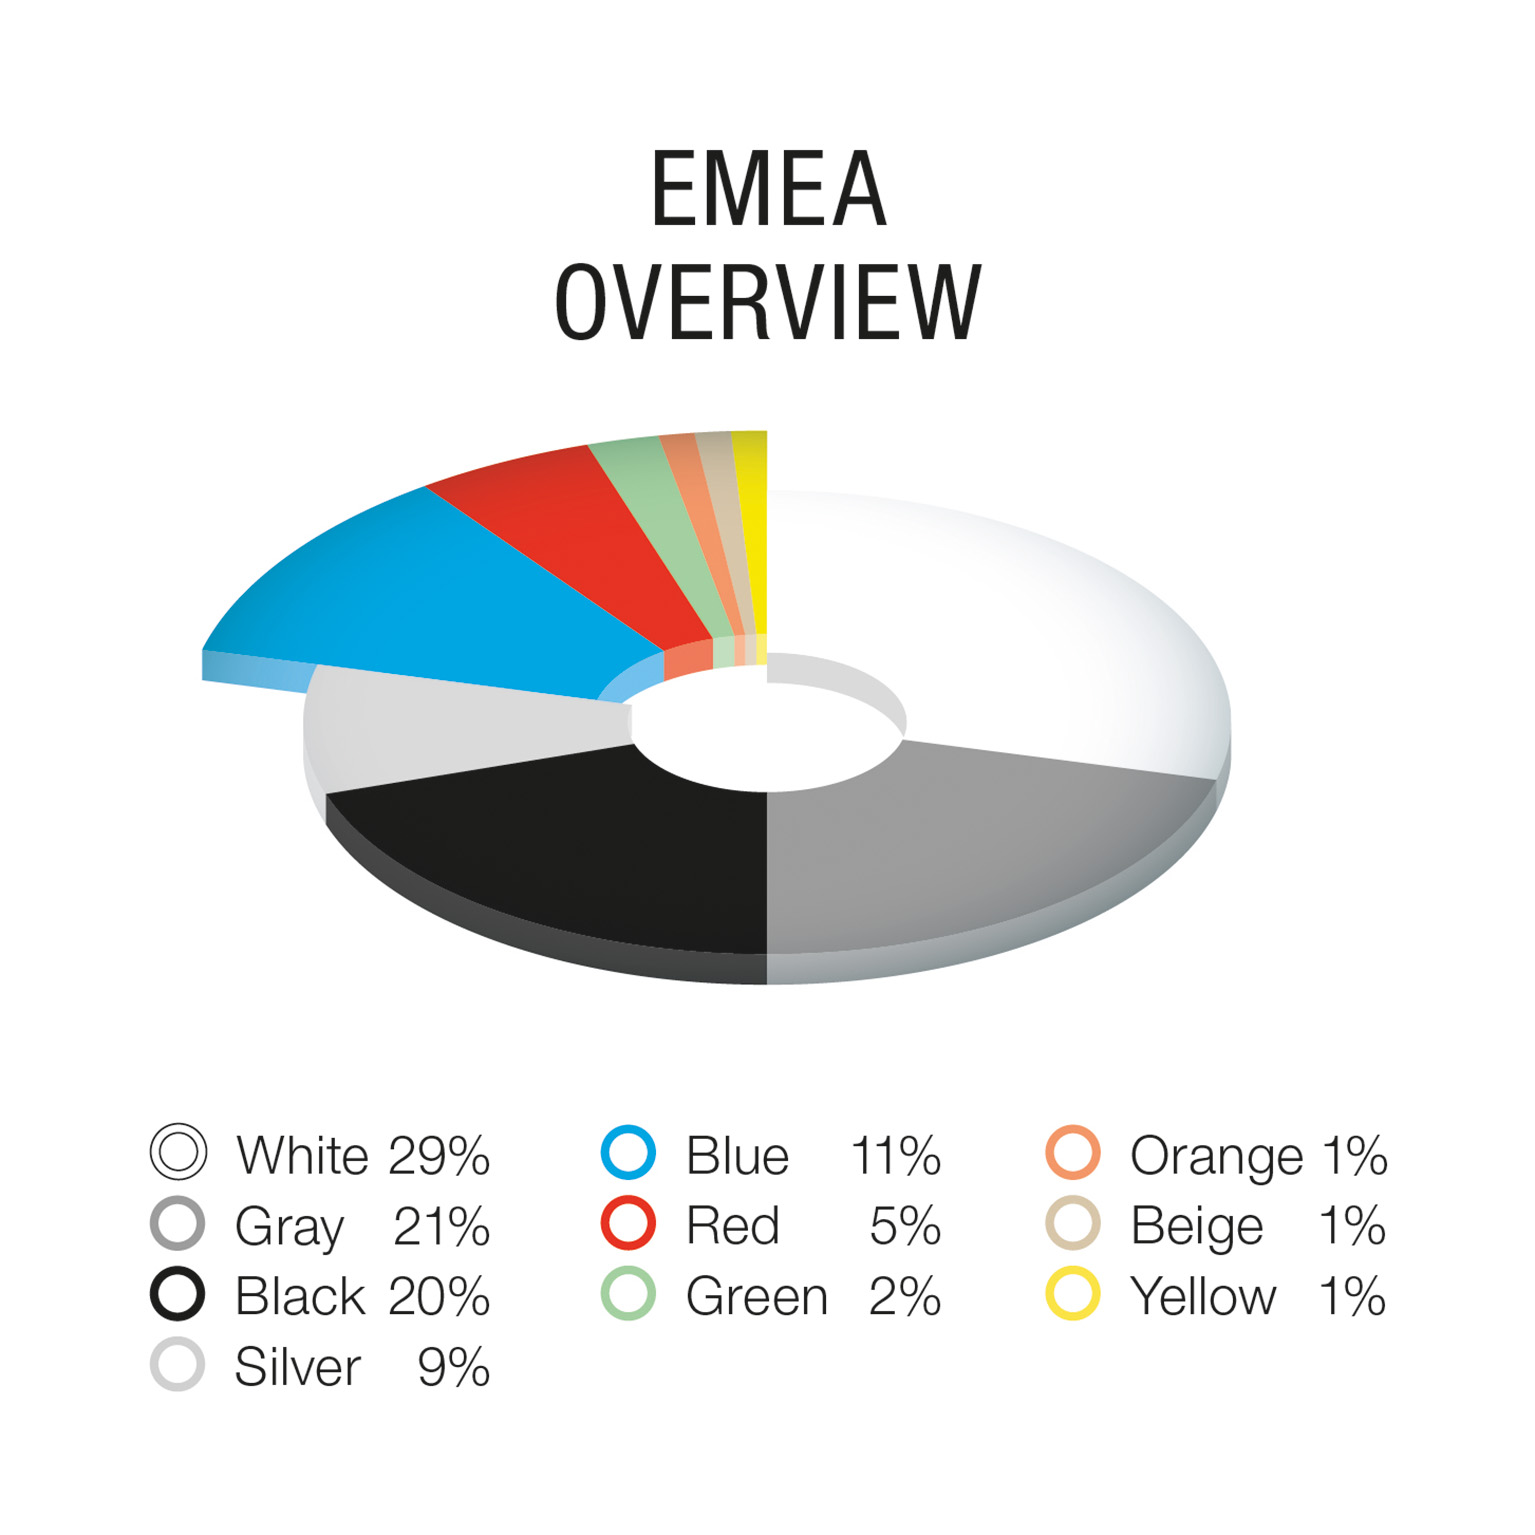 Overview EMEA